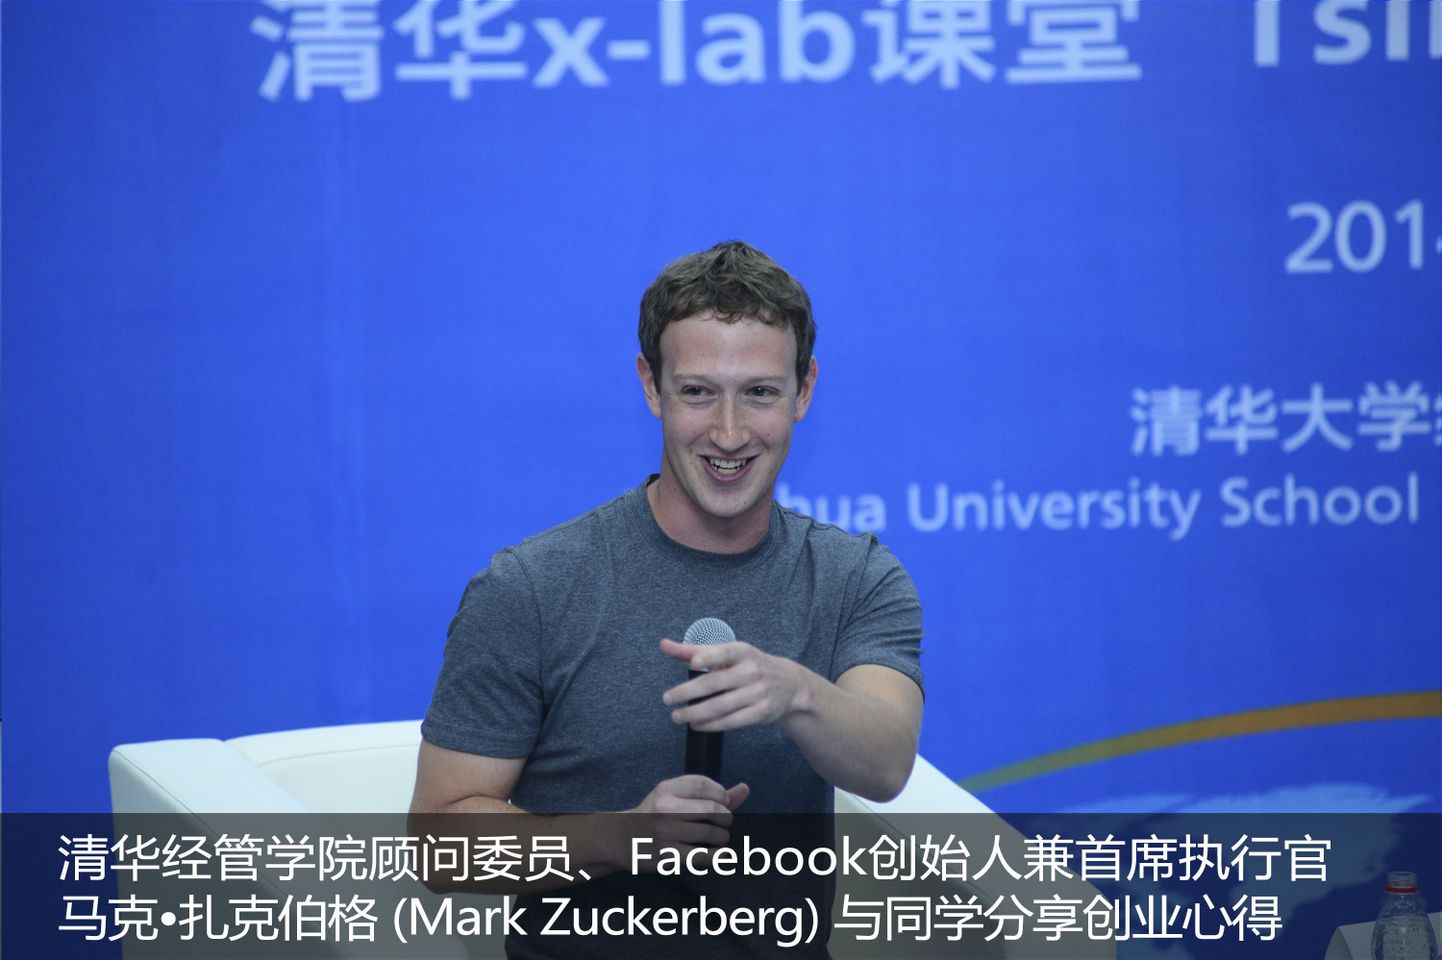 Facebooki asutaja ja juht Mark Zuckerberg Tsinghua ülikoolis esinemas.